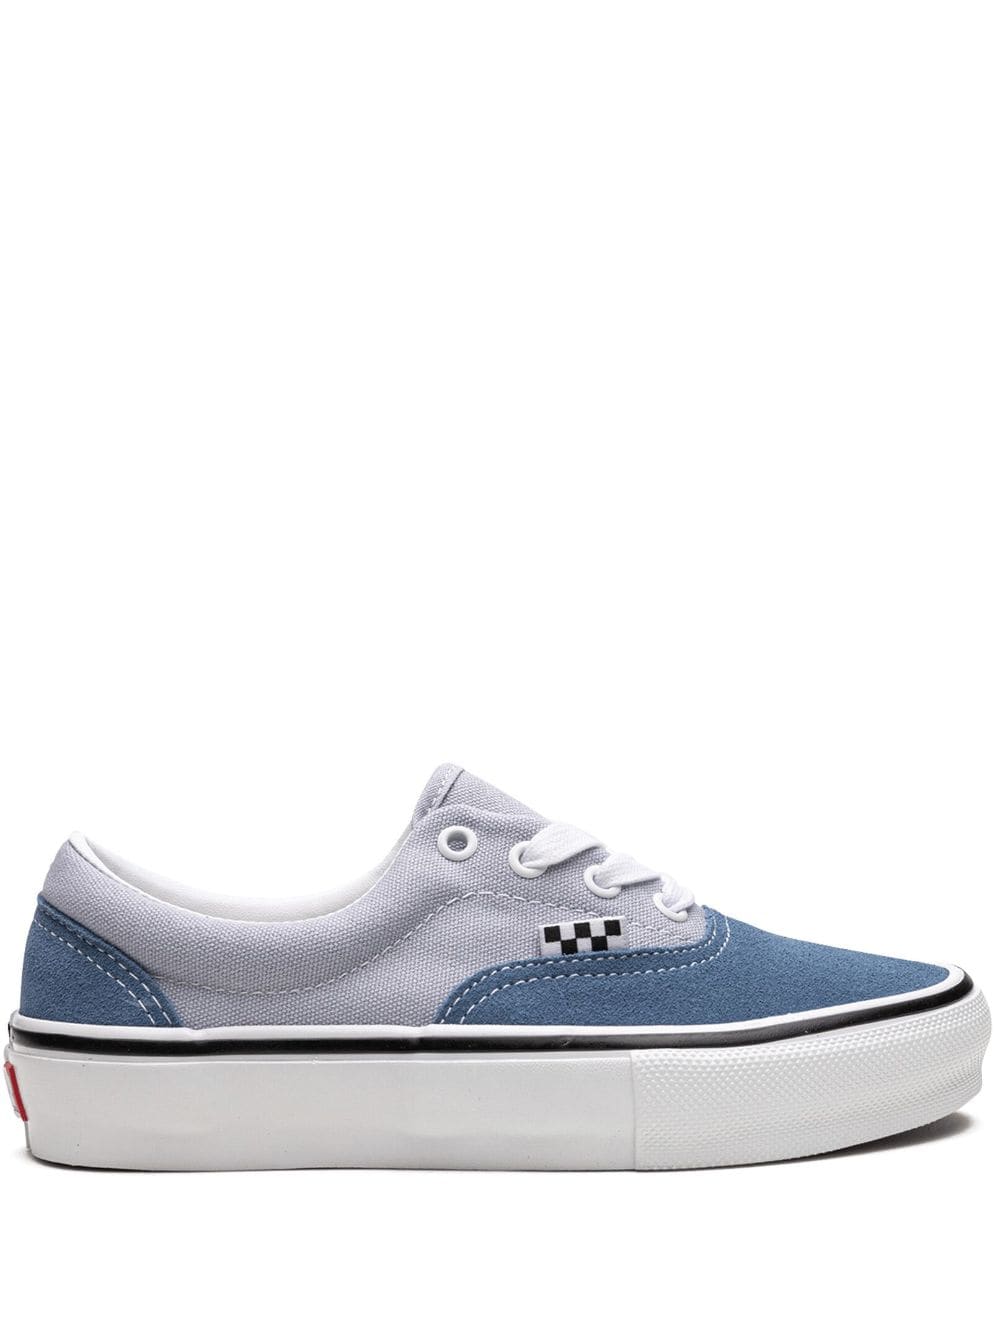 Vans Skate Era sneakers - Blue von Vans